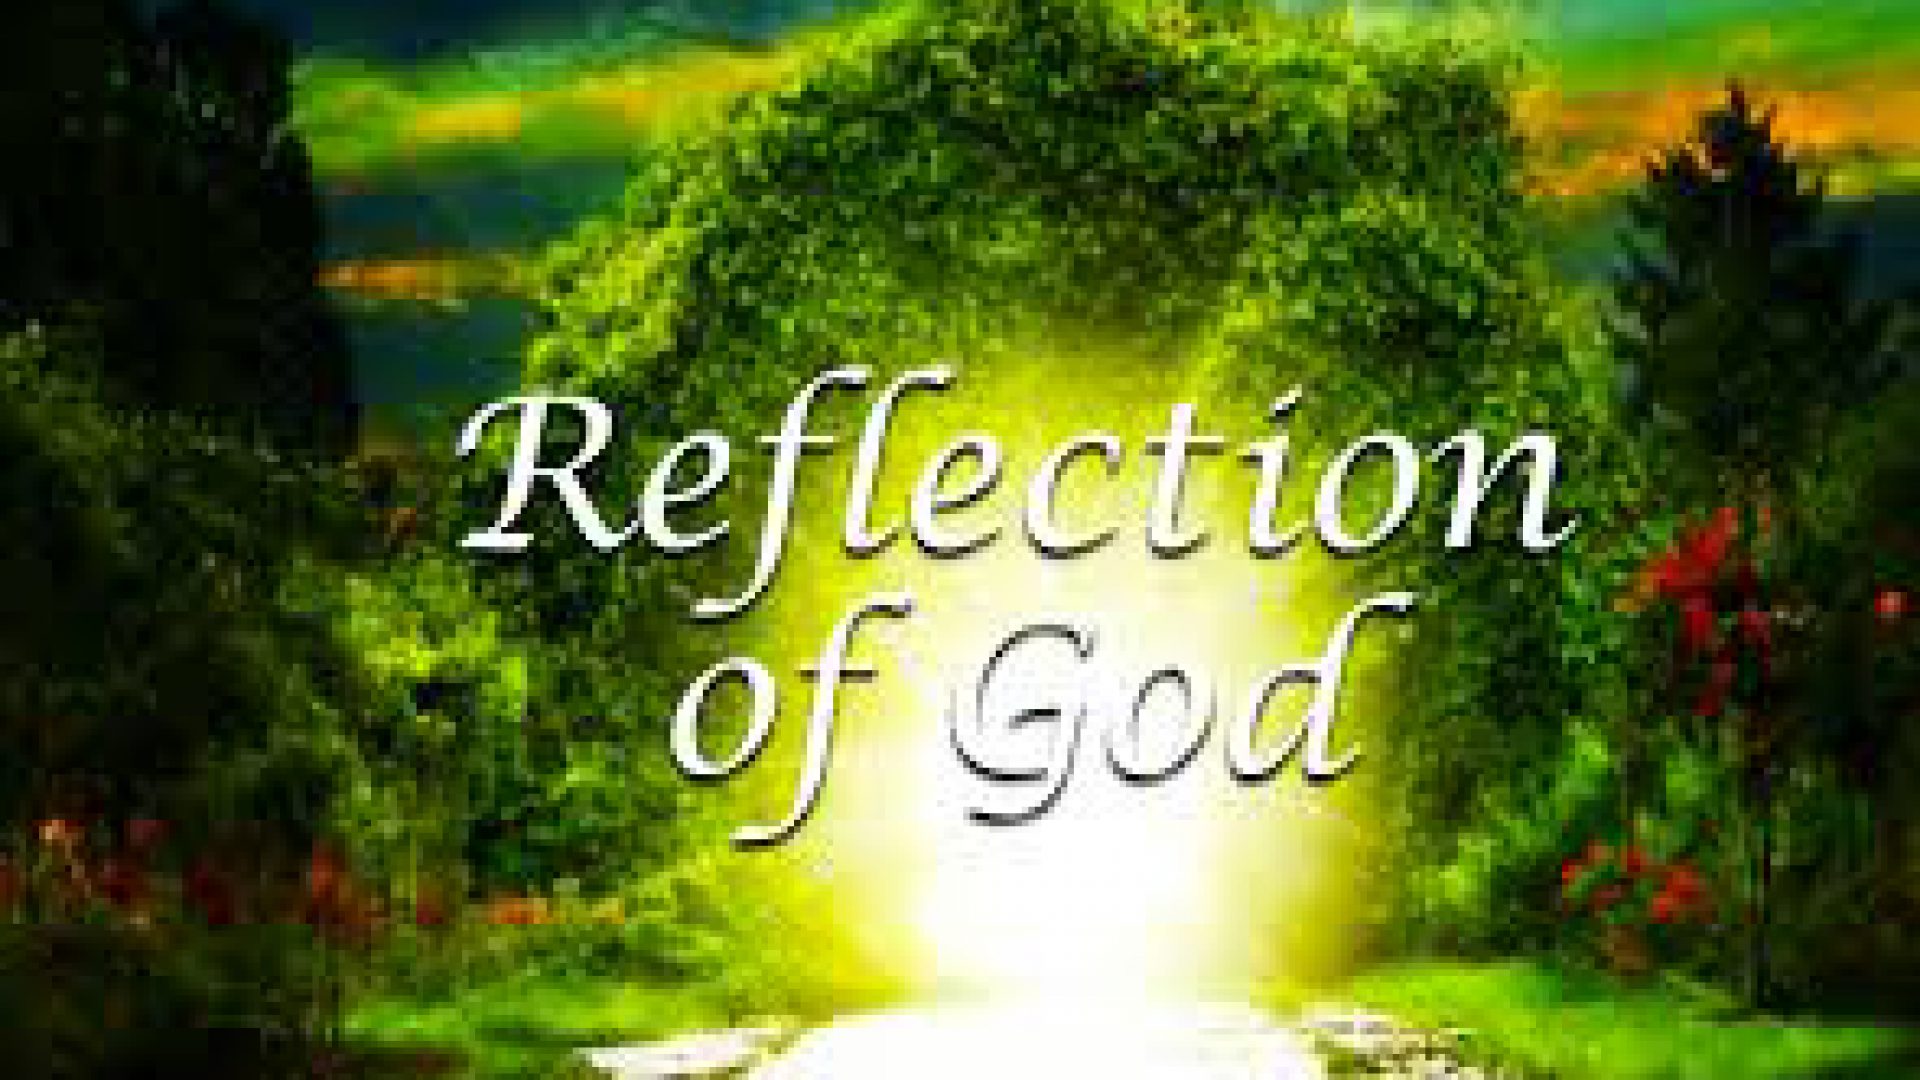 A REFLECTION OF GOD’S GLORY